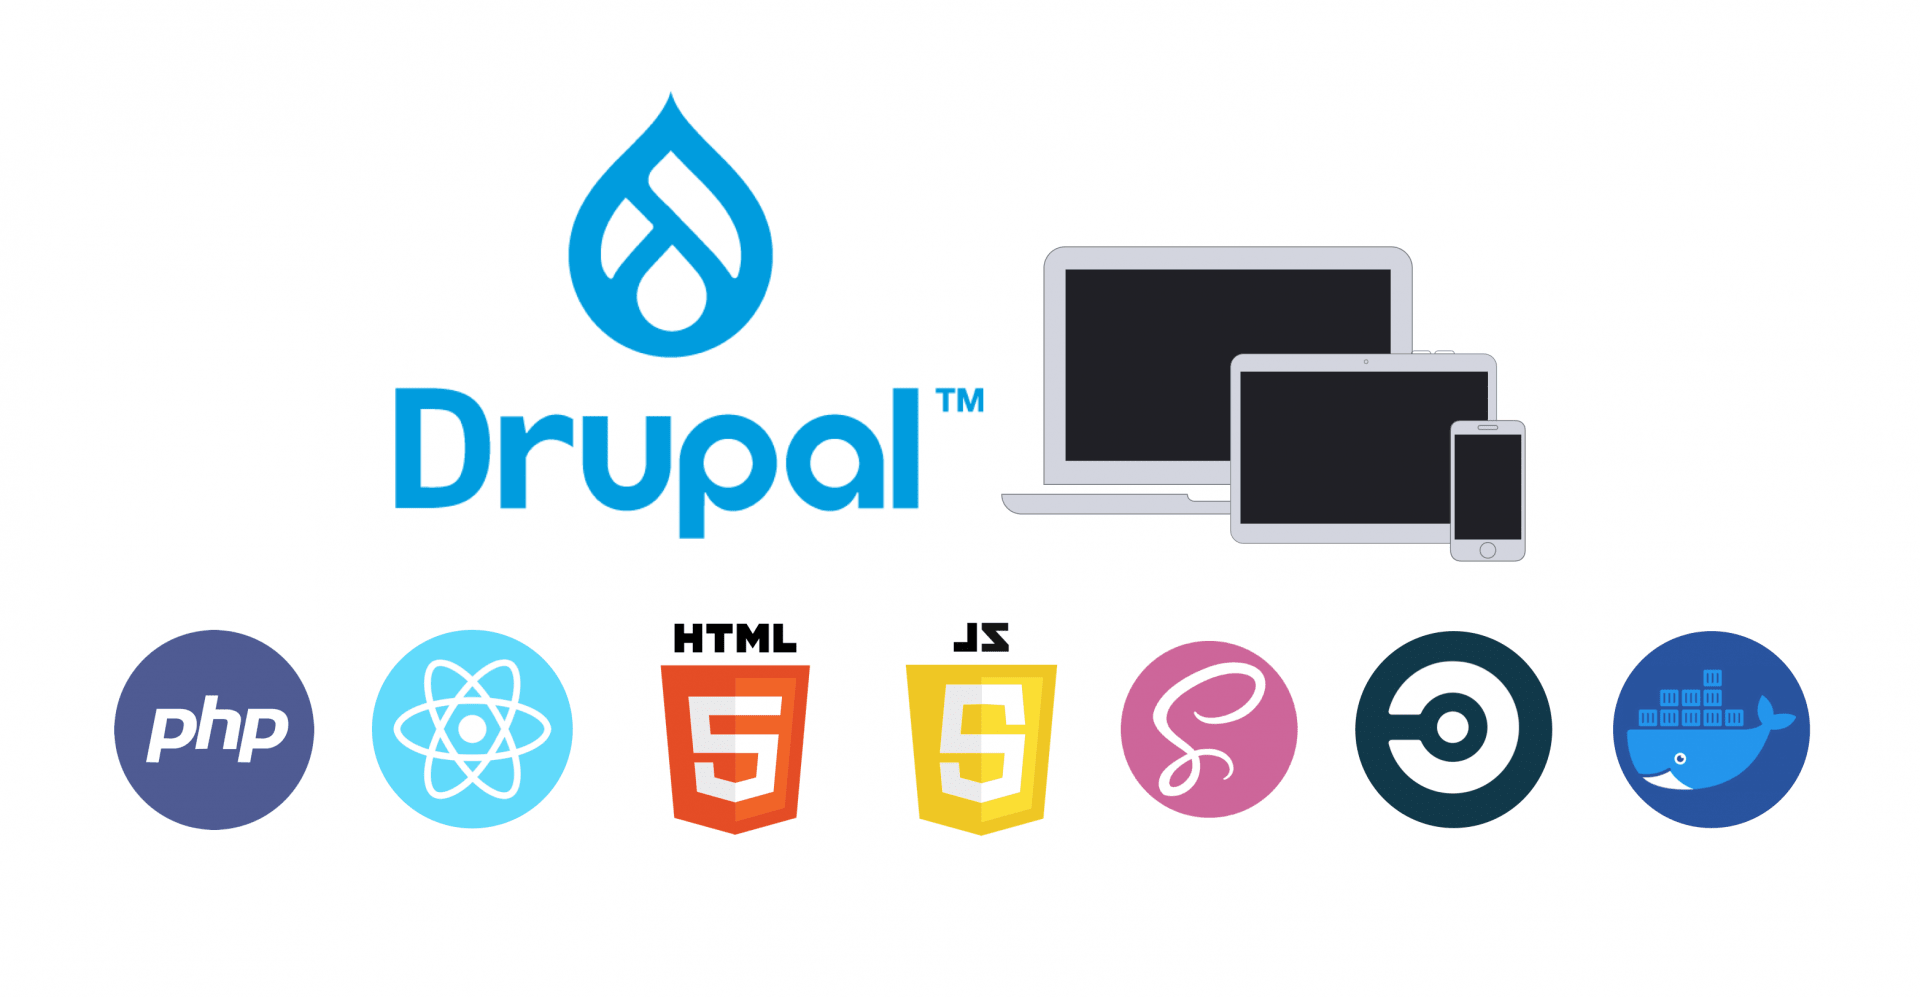 find a drupal developer